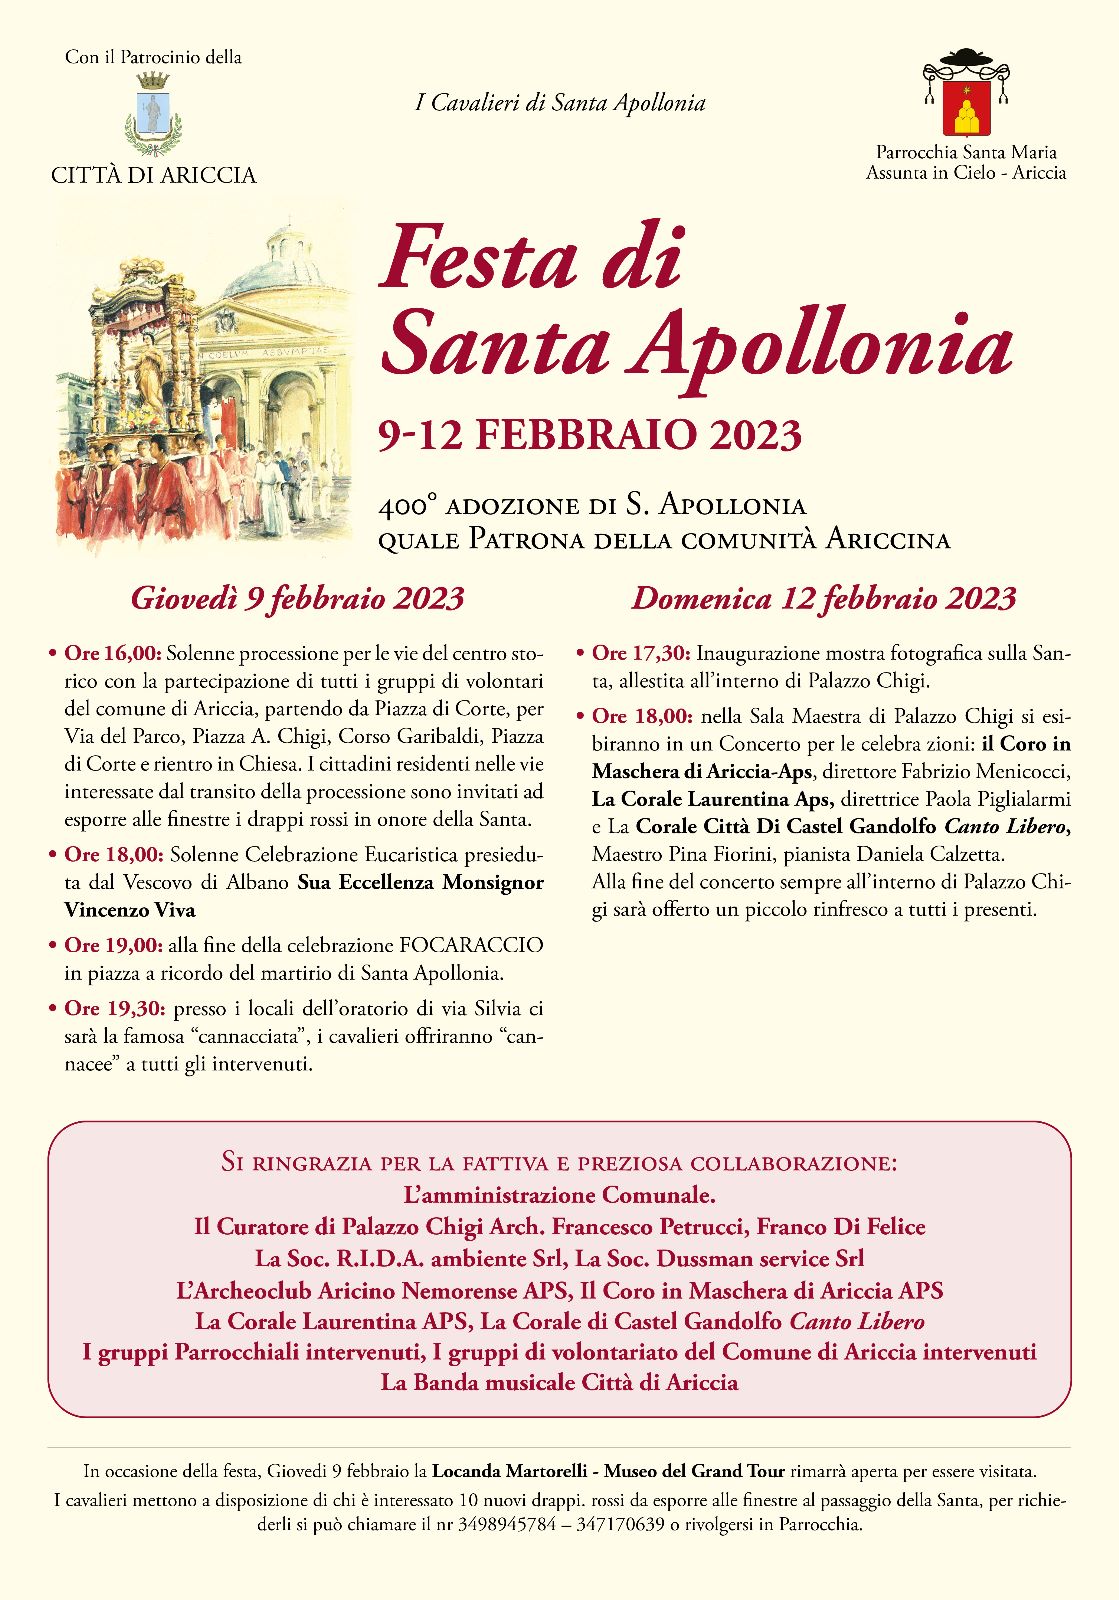 Ariccia, Il 9 e 12 febbraio la festa dedicata alla patrona S. Apollonia martire